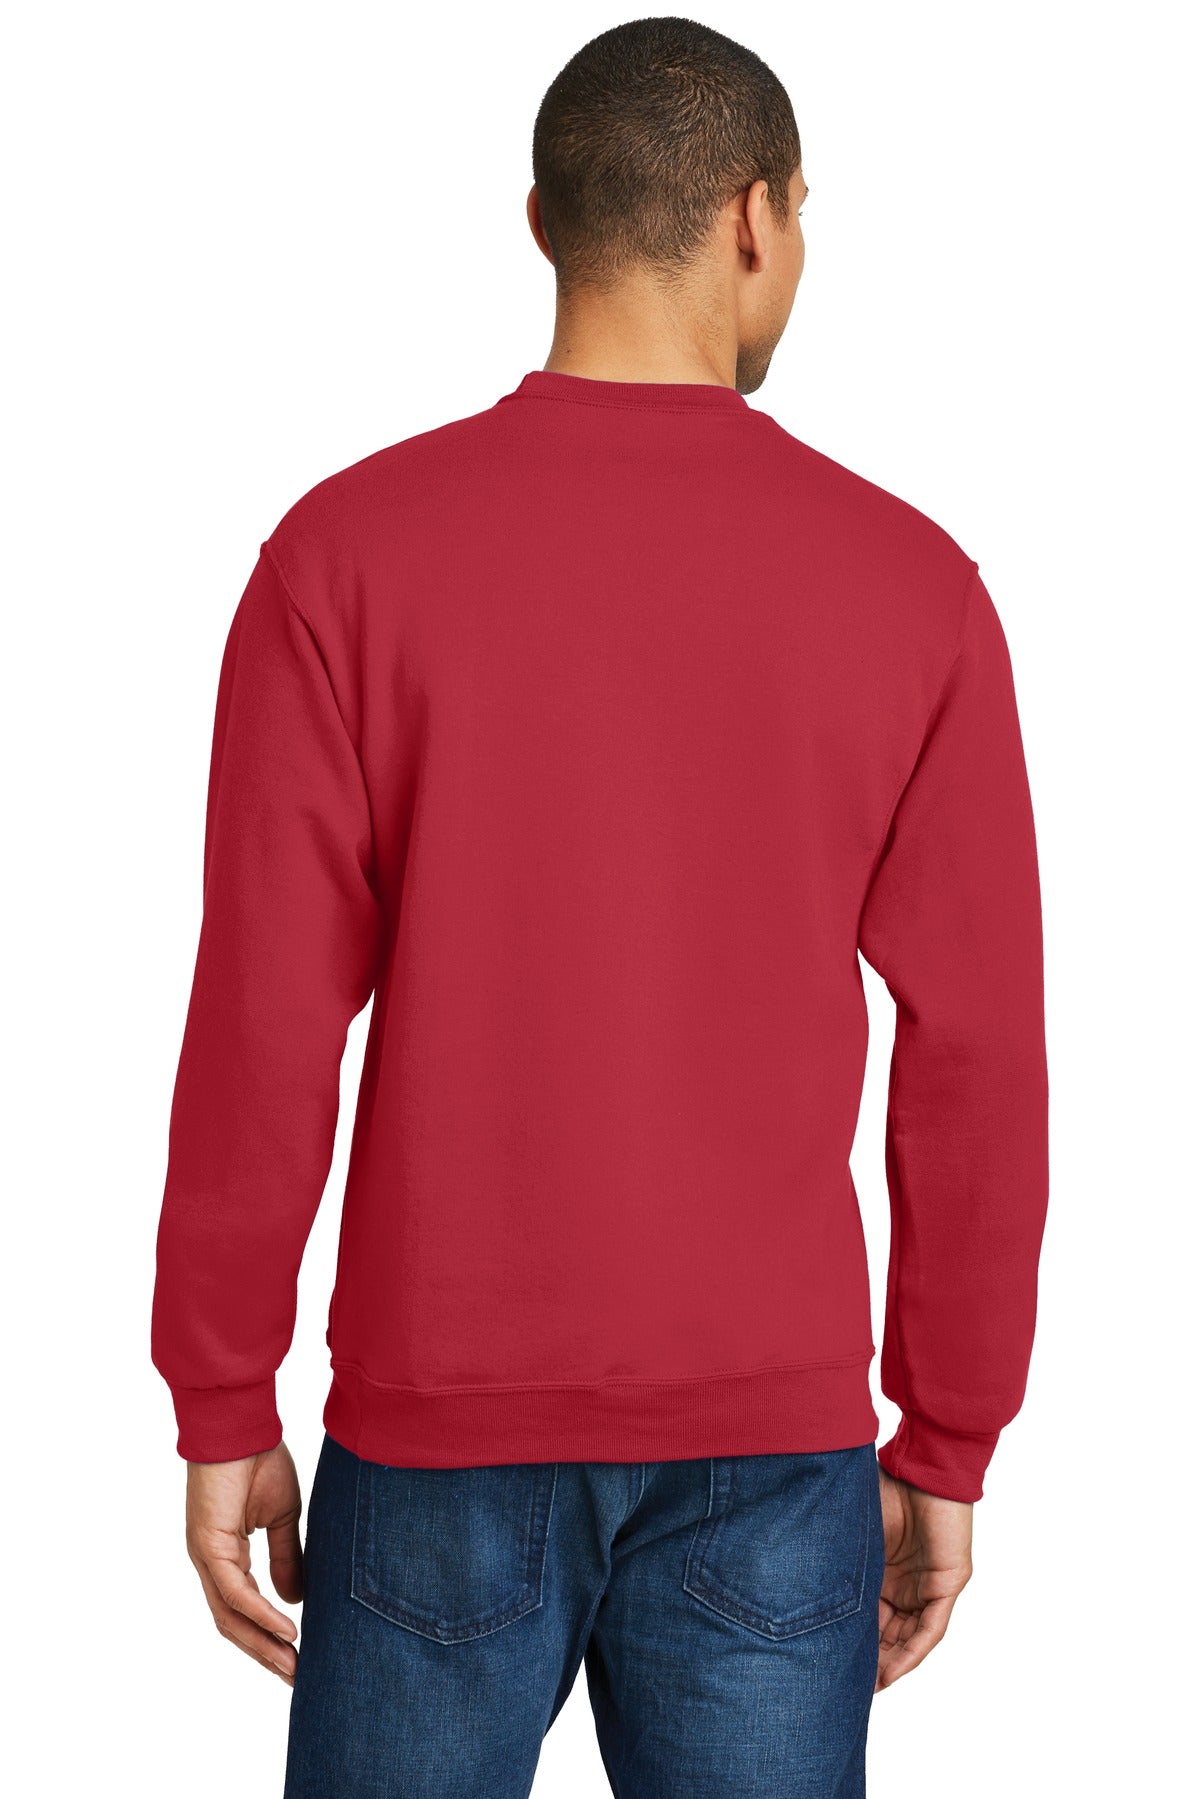 Jerzees - NuBlend Crewneck Sweatshirt. J562M